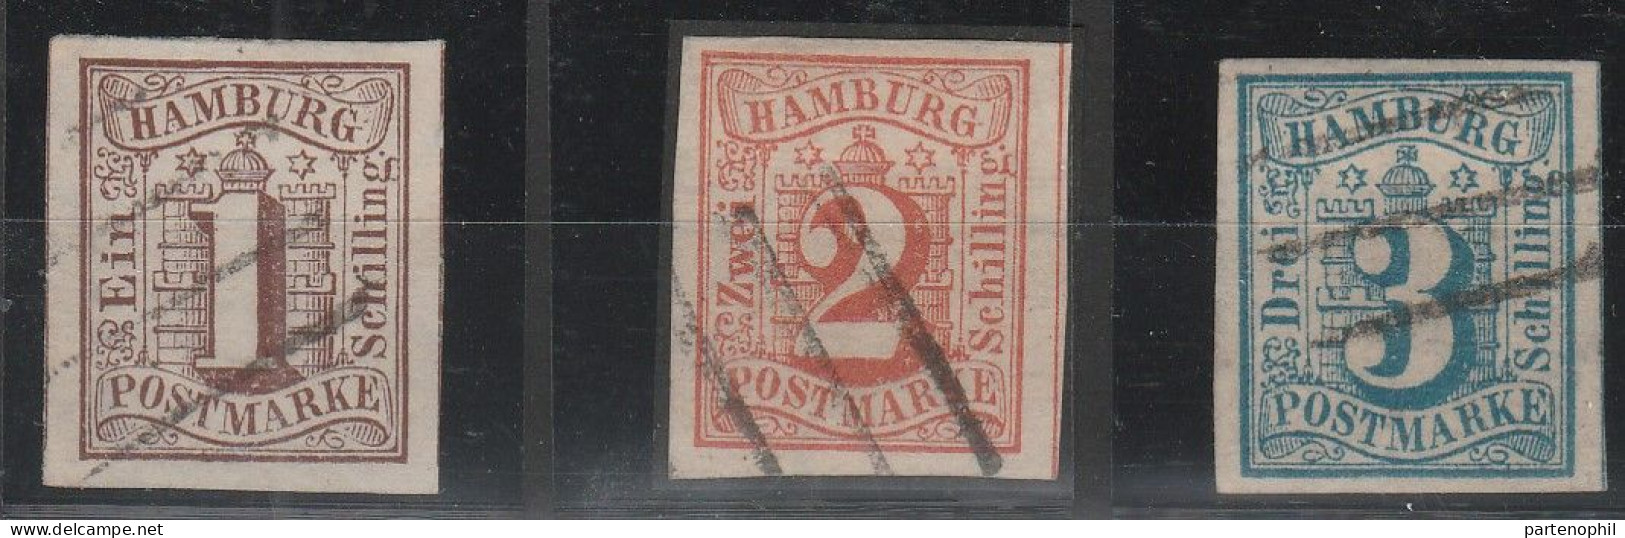 478 Hamburg (Amburgo) 1859 - Stemma, 3 Valori N. 2/4. Cat. € 410,00. SPL - Hamburg